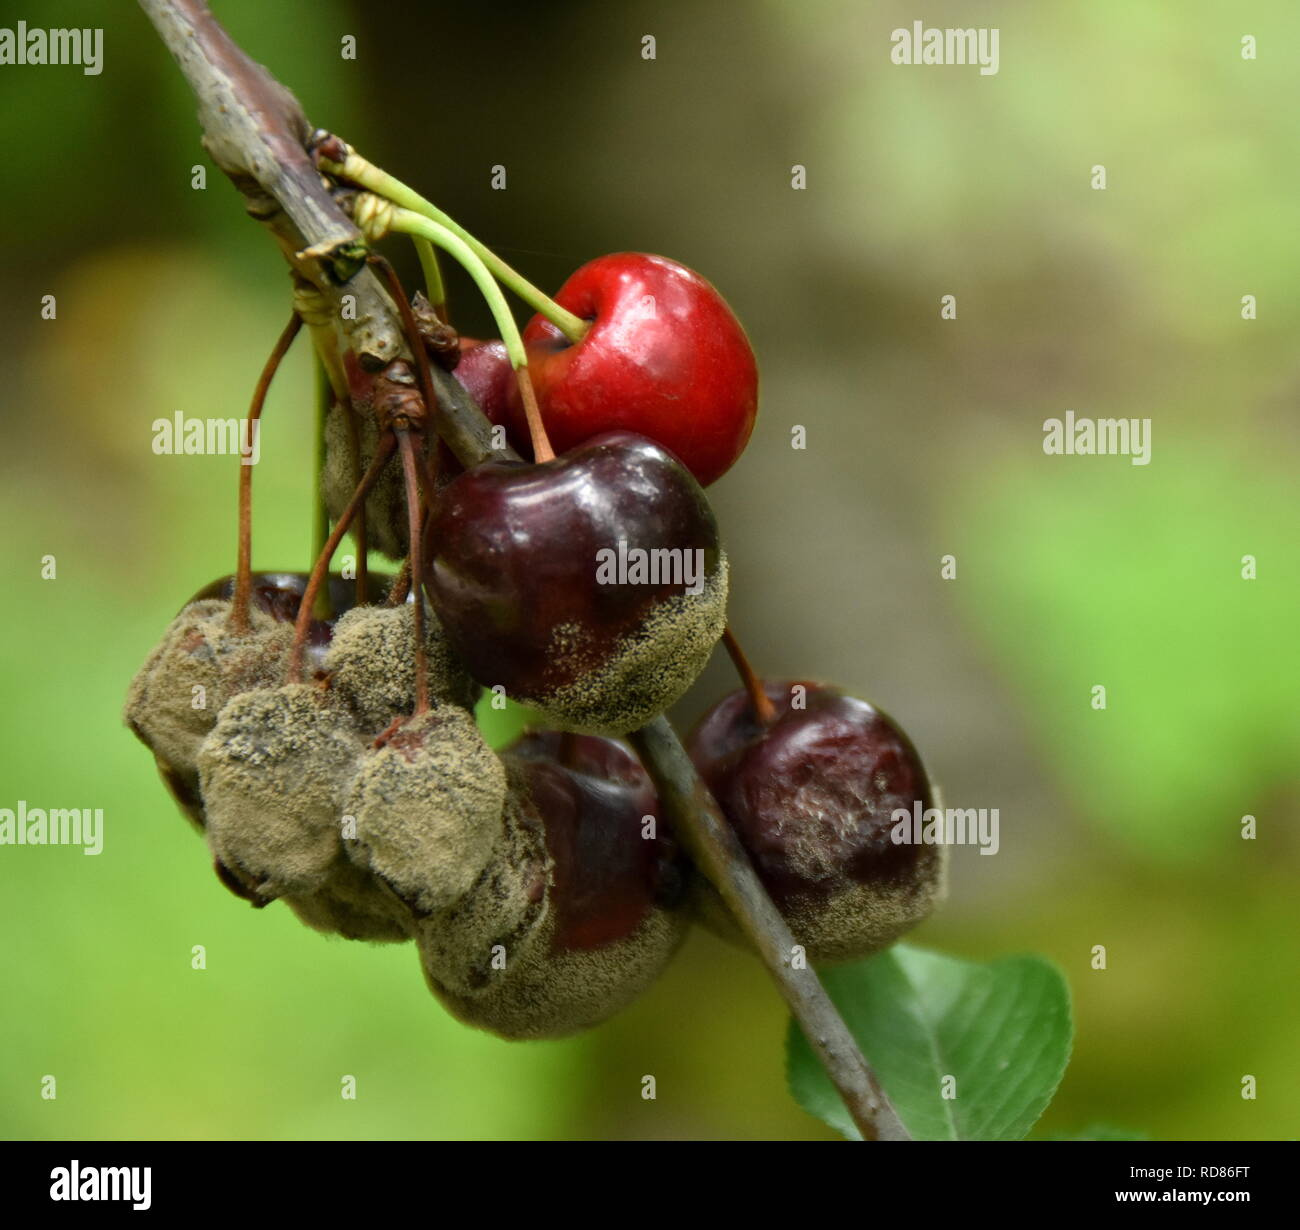 Le ciliegie danneggiati dalla troppa pioggia e il calore provocando marciume bruno (Manilinia fructicola) Foto Stock